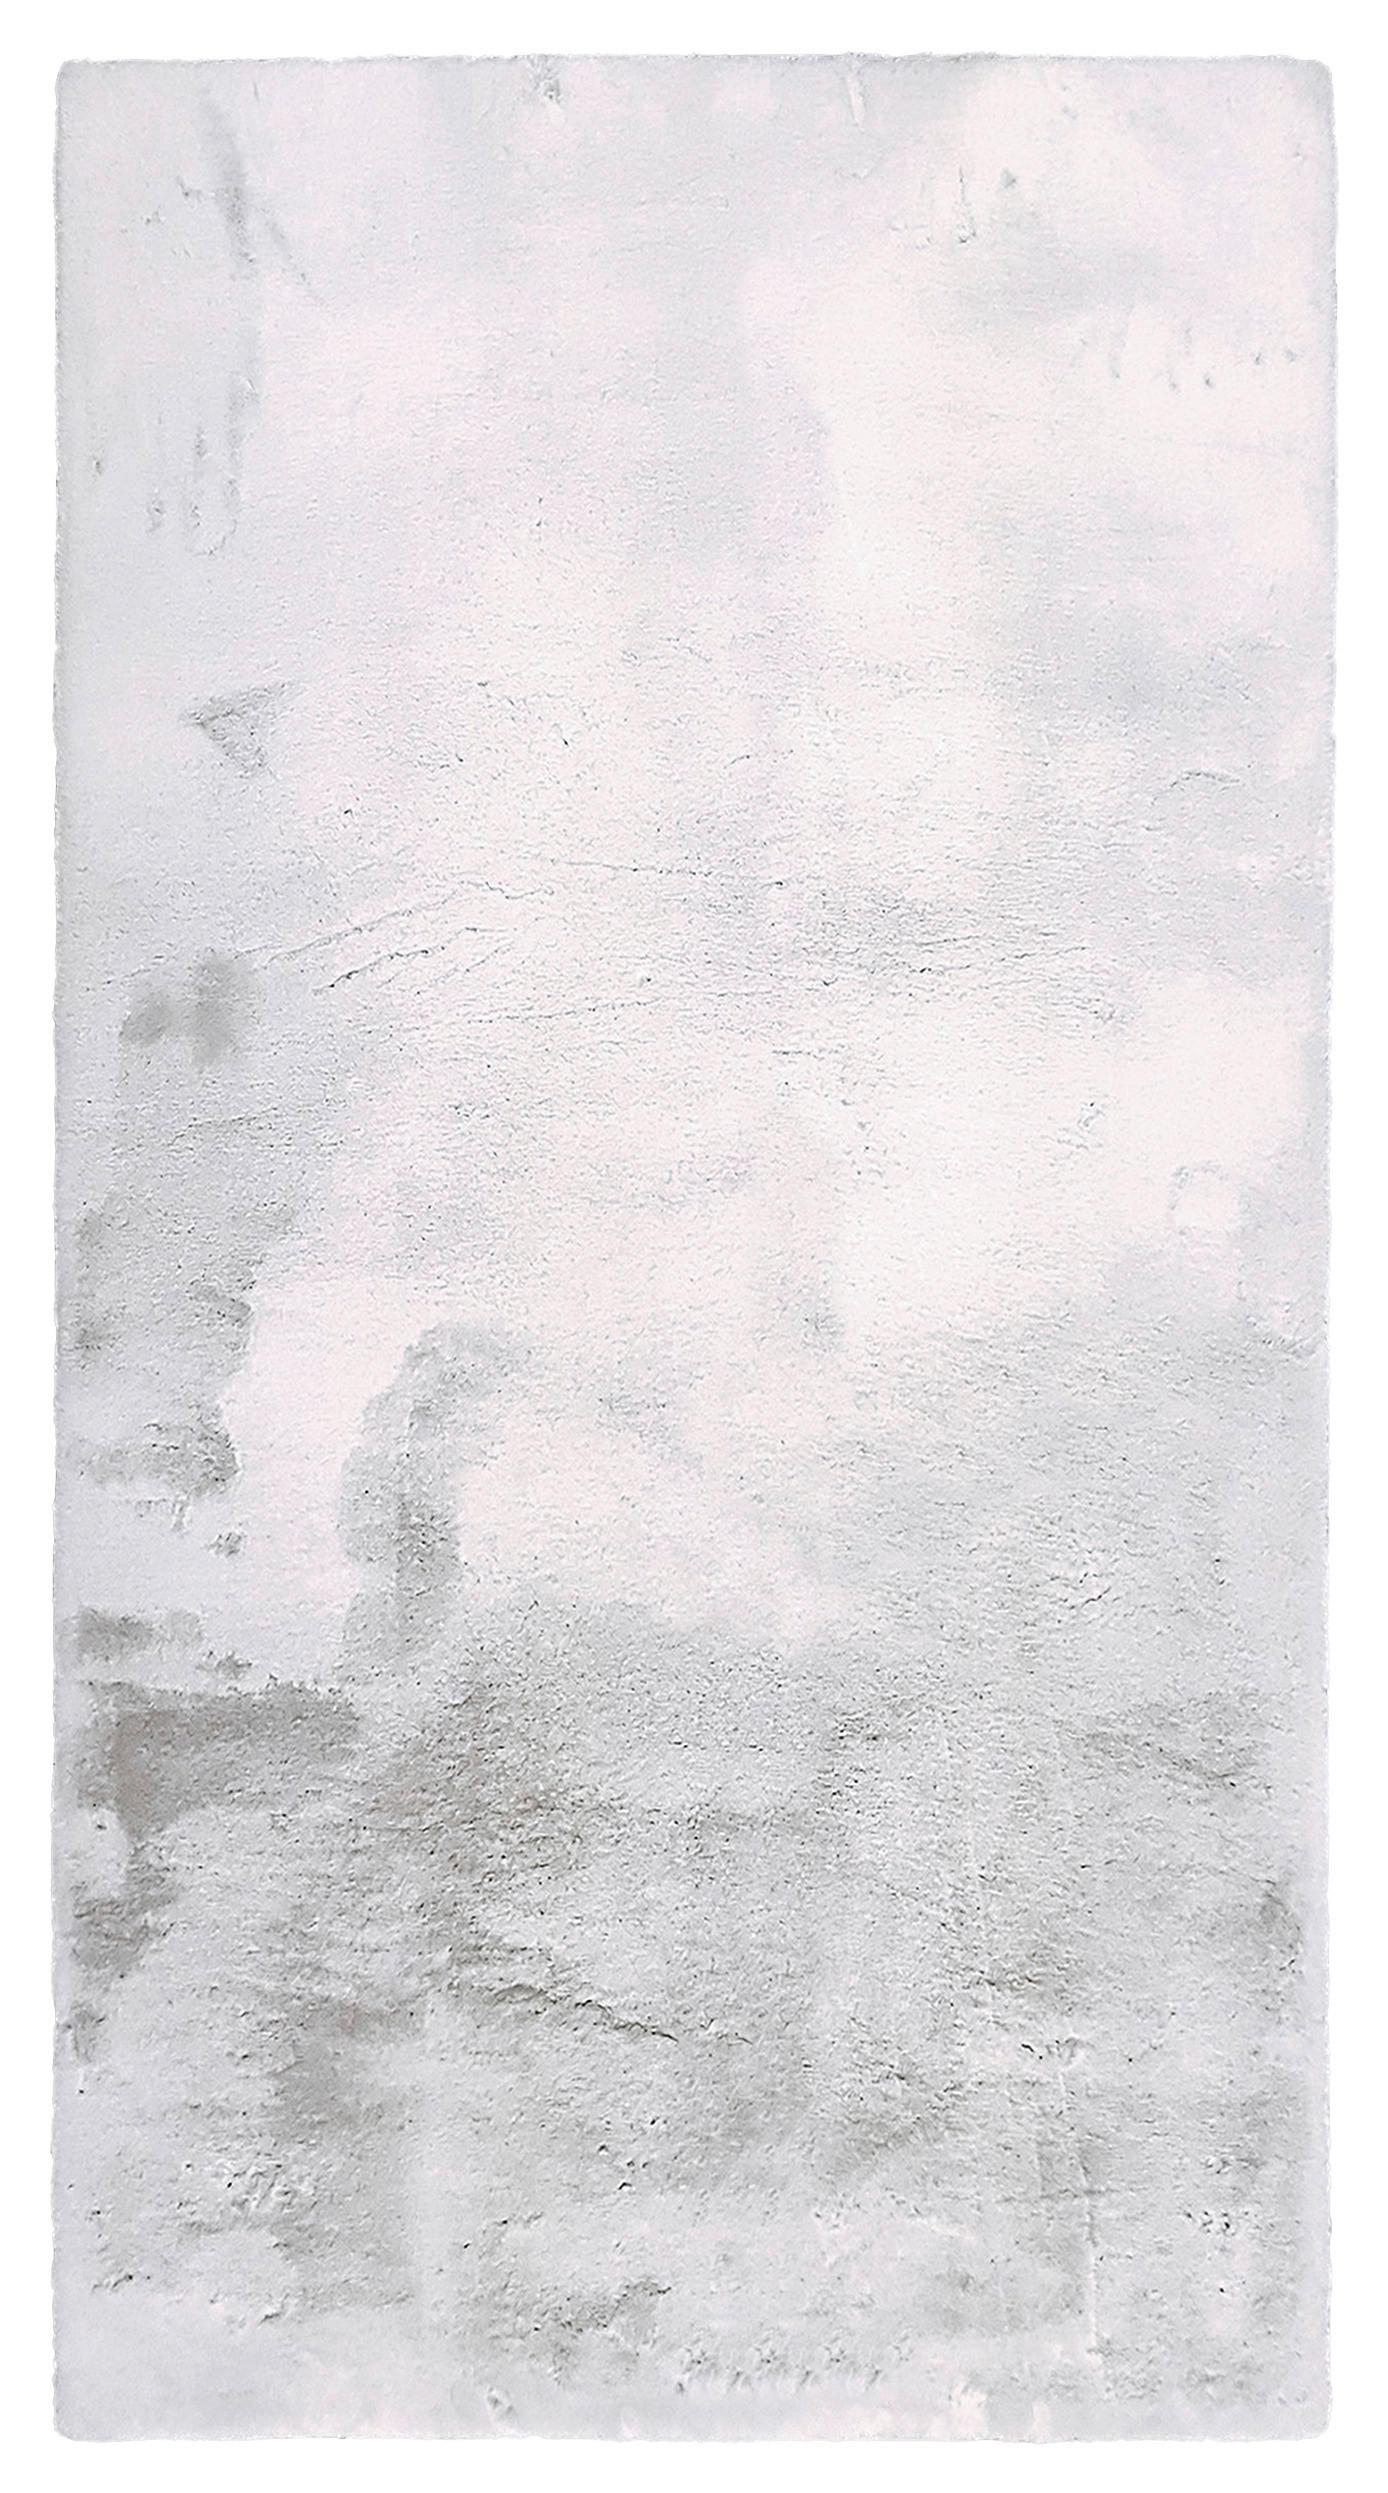 Umjetno Krzno Denise 3 -Akt- - bijela/srebrne boje, Romantik / Landhaus, tekstil/krzno (160/220cm) - Modern Living